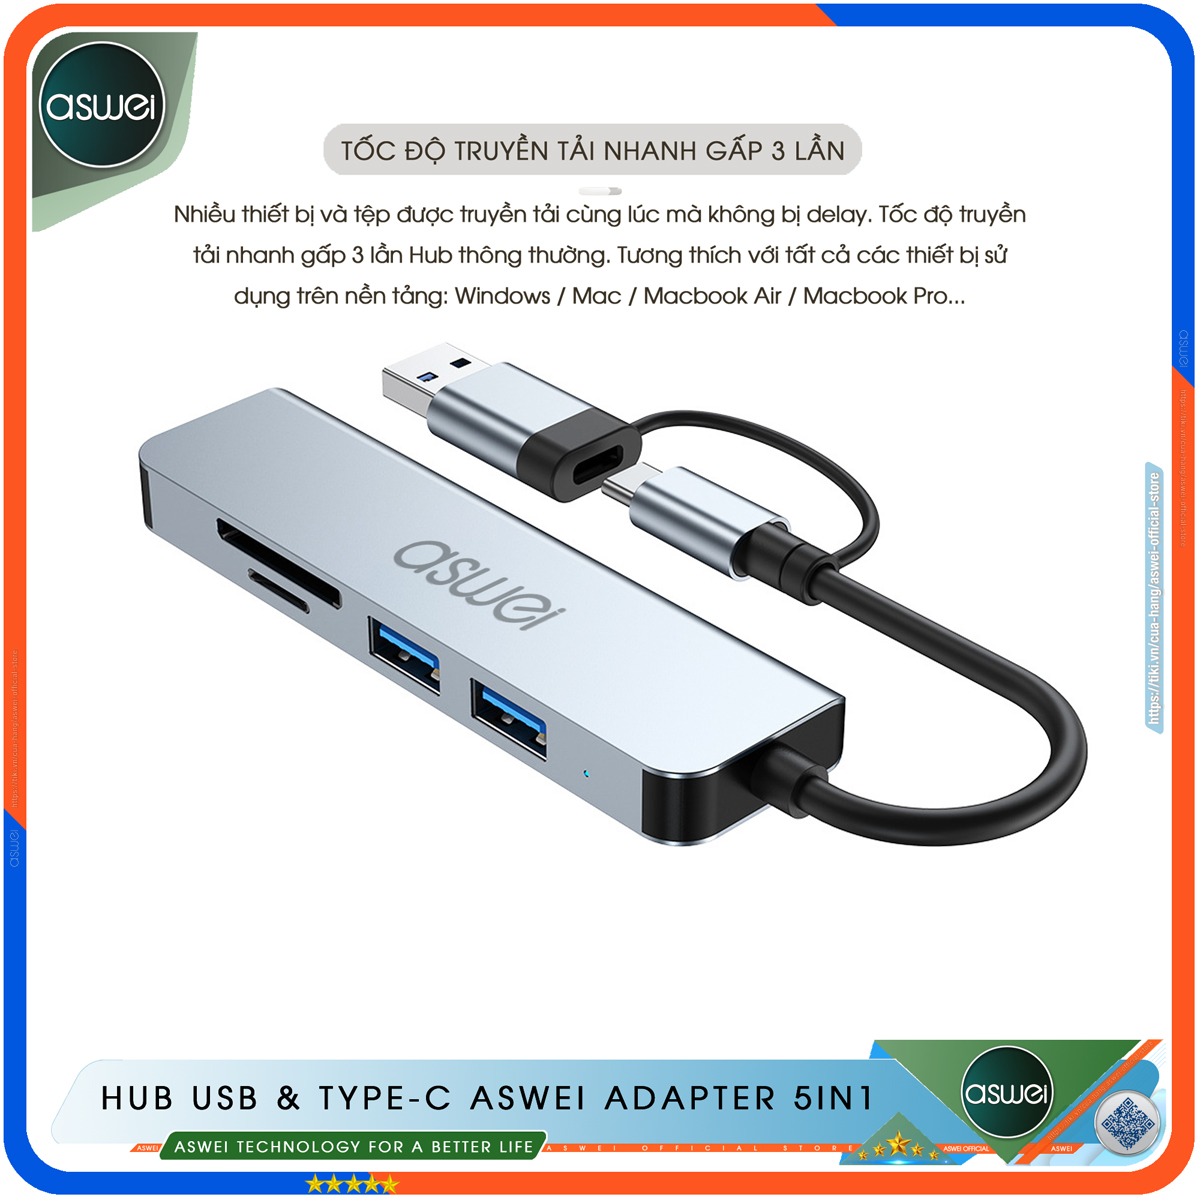 Hub USB 3.0 Và Hub Type C ASWEI Adapter 5in1 - Cổng Chia USB Mở Rộng Kết Nối Tốc Độ Cao Dành Cho Macbook, Laptop, PC - Hub Chuyển Đổi USB Type-C Hỗ Trợ Sạc Pin, Kết Nối Đa Năng ổ Cứng, Bàn Phím, Chuột, Máy In, Ổ Chia USB - Hàng Chính Hãng